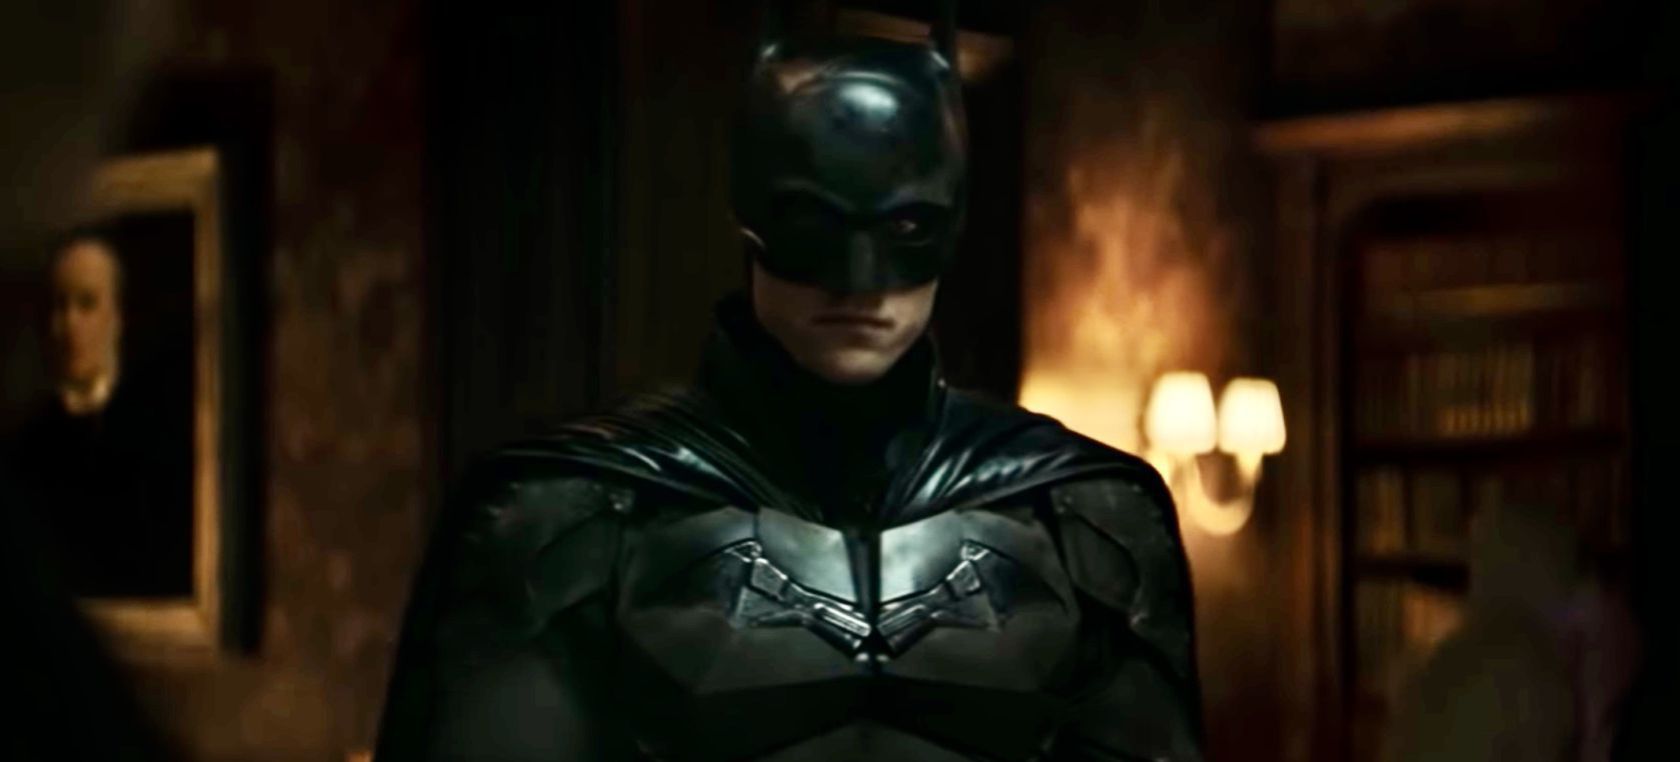 Robert Pattinson volverá a ser 'The Batman' en la secuela de una nueva saga  | Cine y Televisión | LOS40